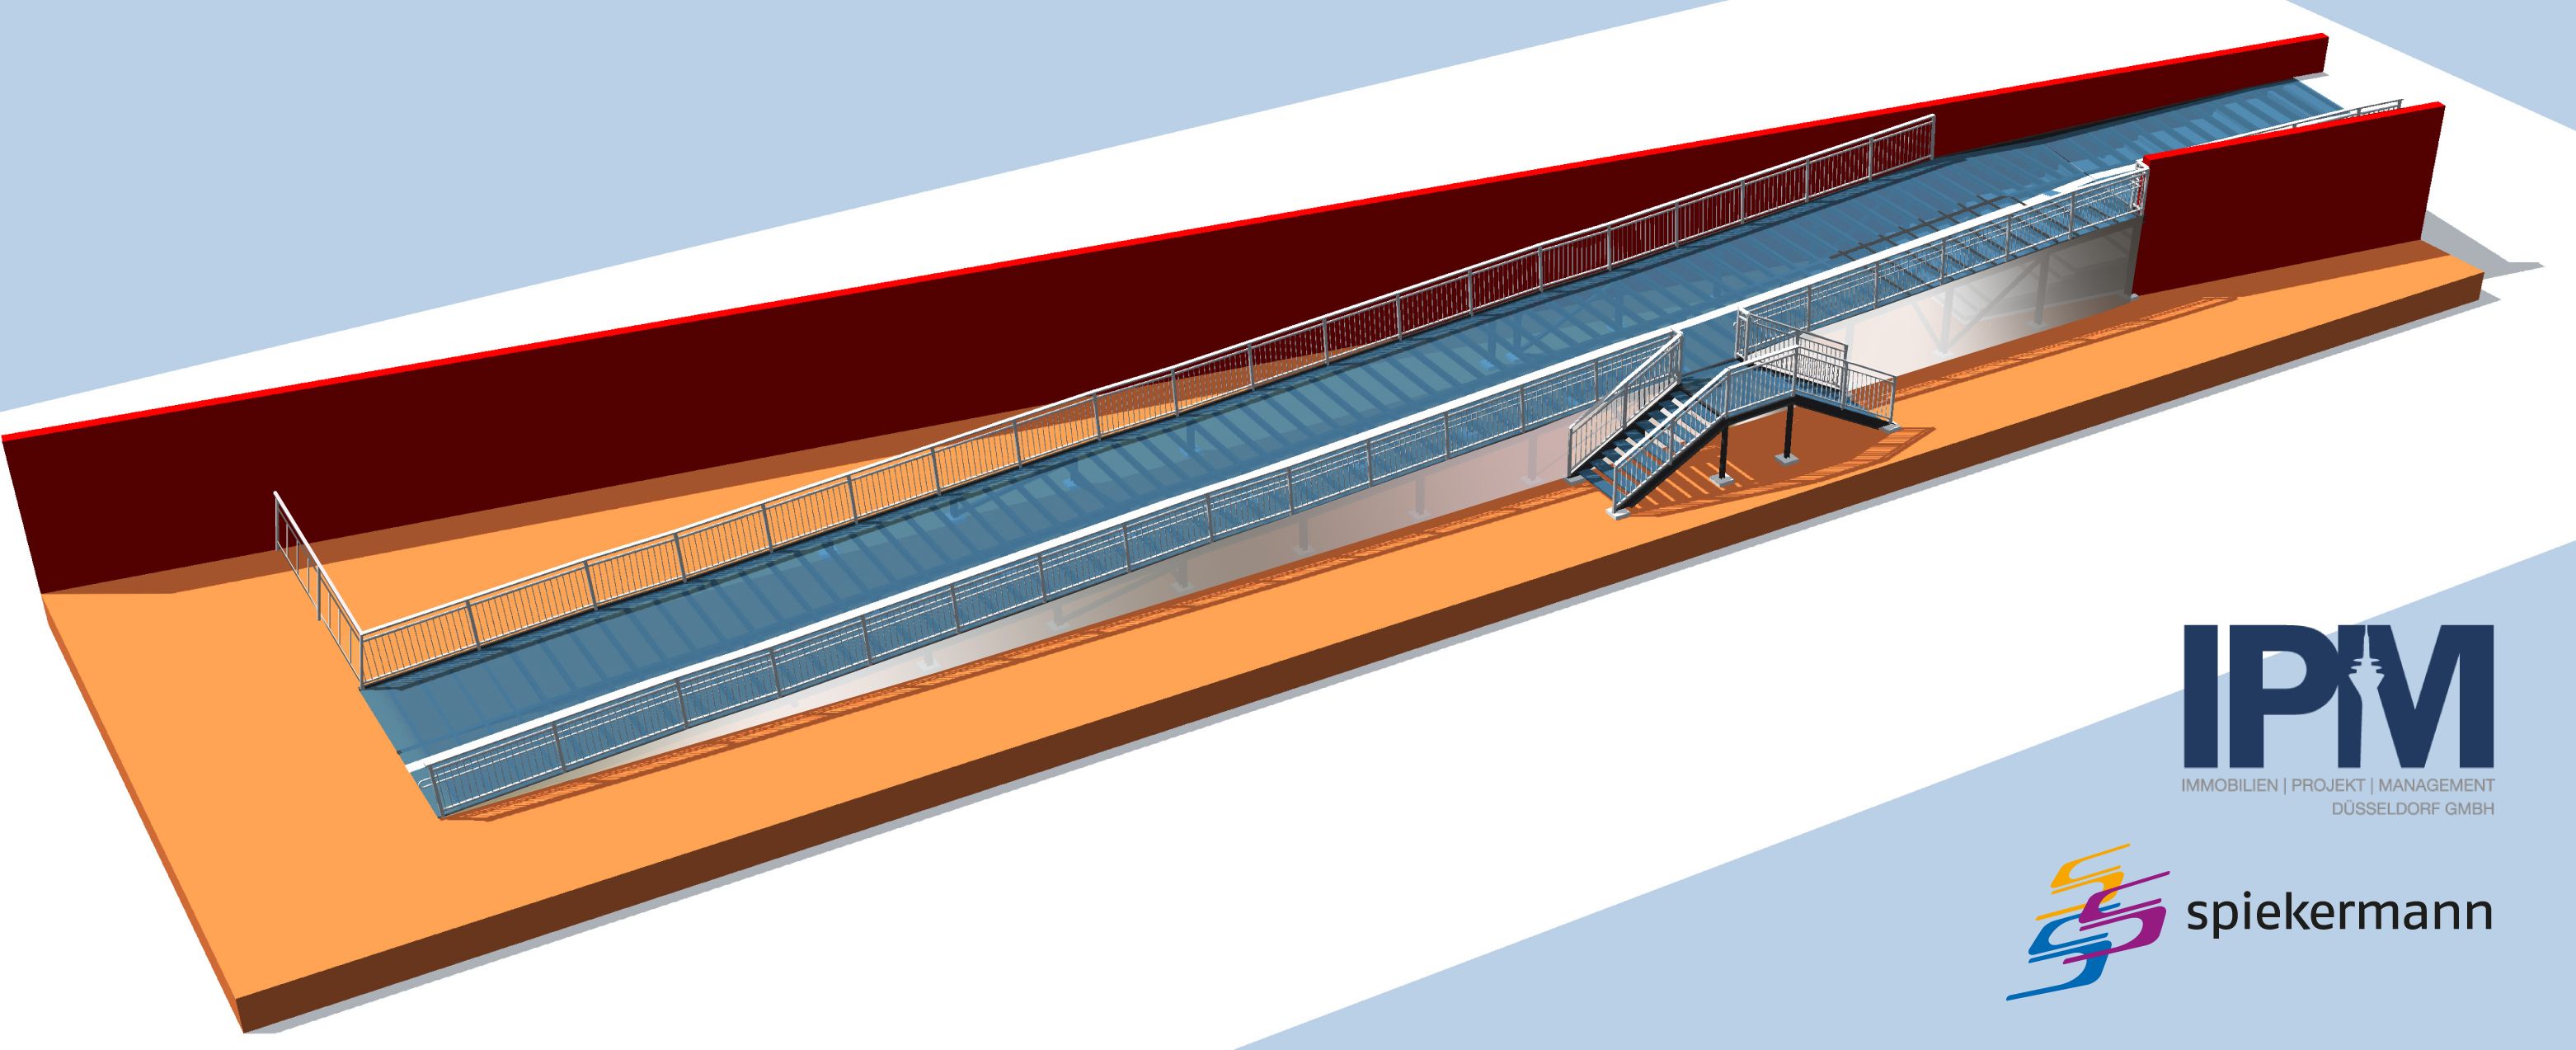 Neben dem neuen Zweirichtungsradweg hat der Ordnungs- und Verkehrsausschuss die Realisierung einer Rampe unterhalb der Oberkasseler Brücke beschlossen. Die Animation zeigt die Rampe © IPM GmbH